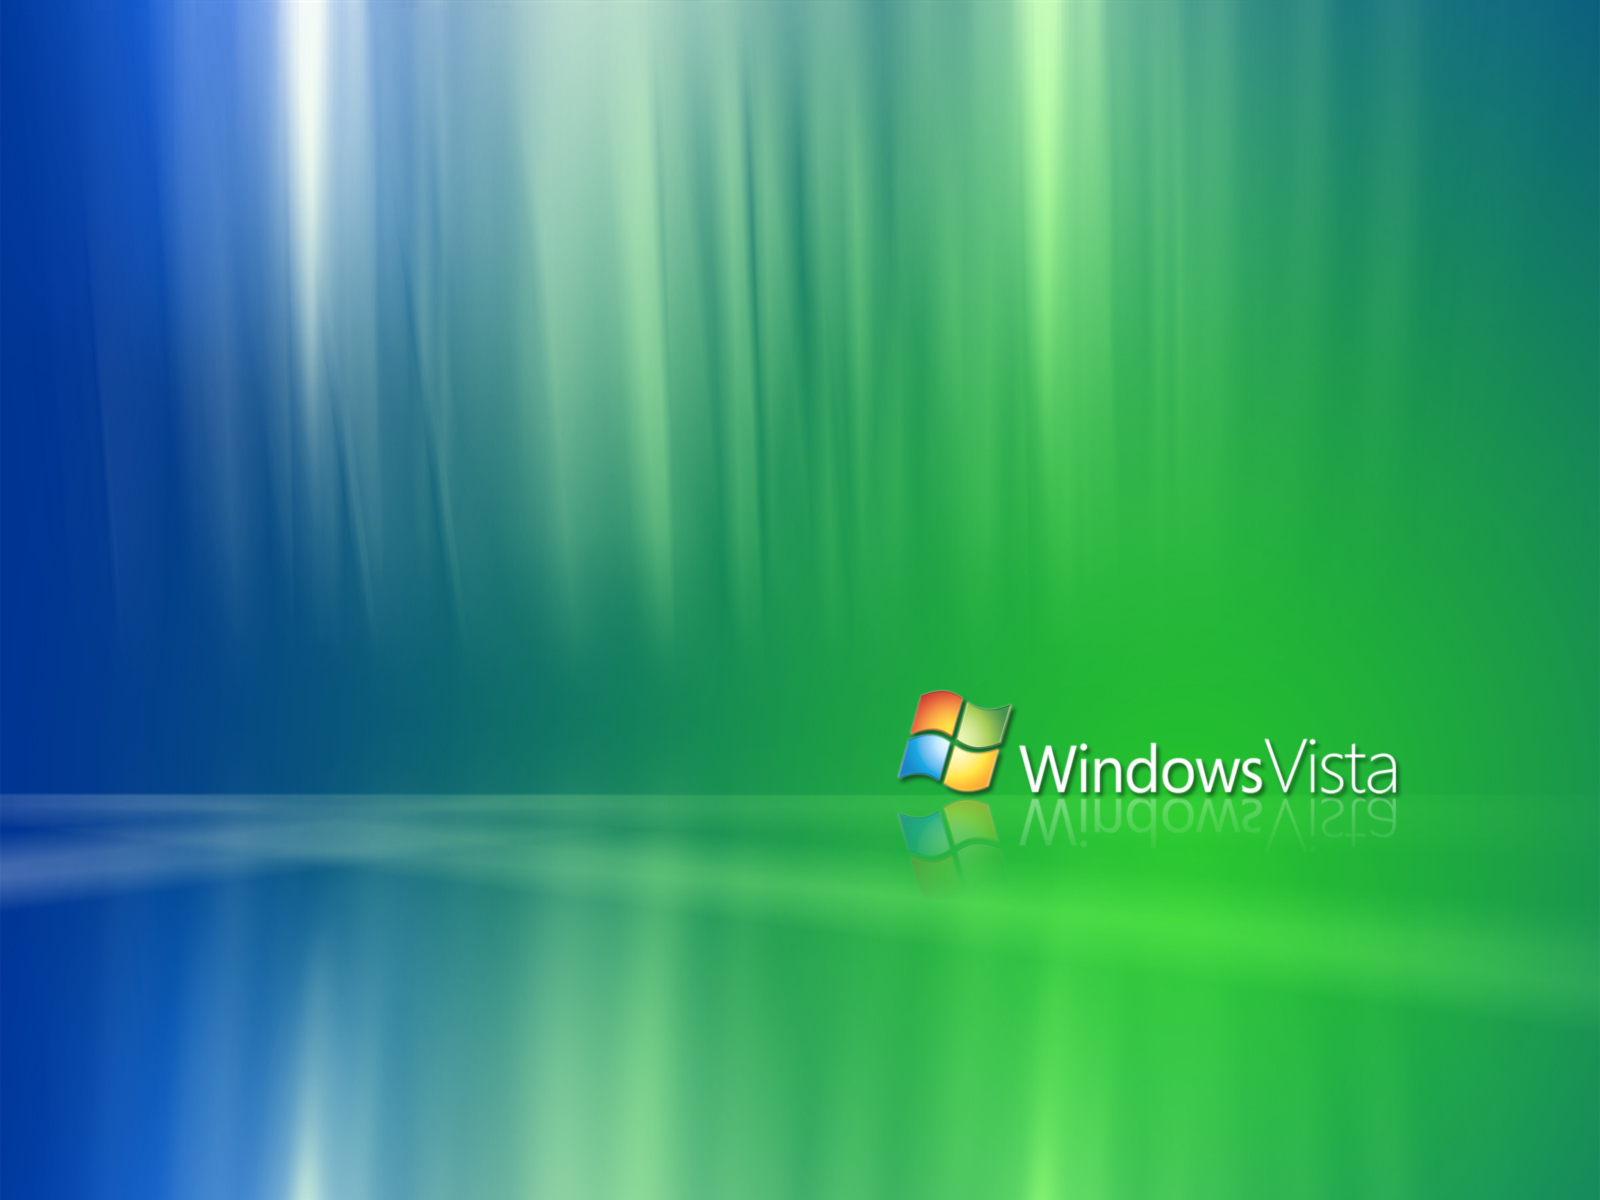 Hình nền miễn phí, Windows Vista: Thế giới đang chờ đón bạn với hình nền đẹp và miễn phí - Windows Vista. Với độ sắc nét hoàn hảo, đây là lựa chọn hoàn hảo cho bất kỳ ai đang tìm kiếm những hình ảnh đẹp mắt để thỏa sức sáng tạo trên máy tính của mình. Còn chần chờ gì nữa! Hãy tải về nhiều hình nền miễn phí để trang trí cho máy tính của bạn ngay hôm nay!